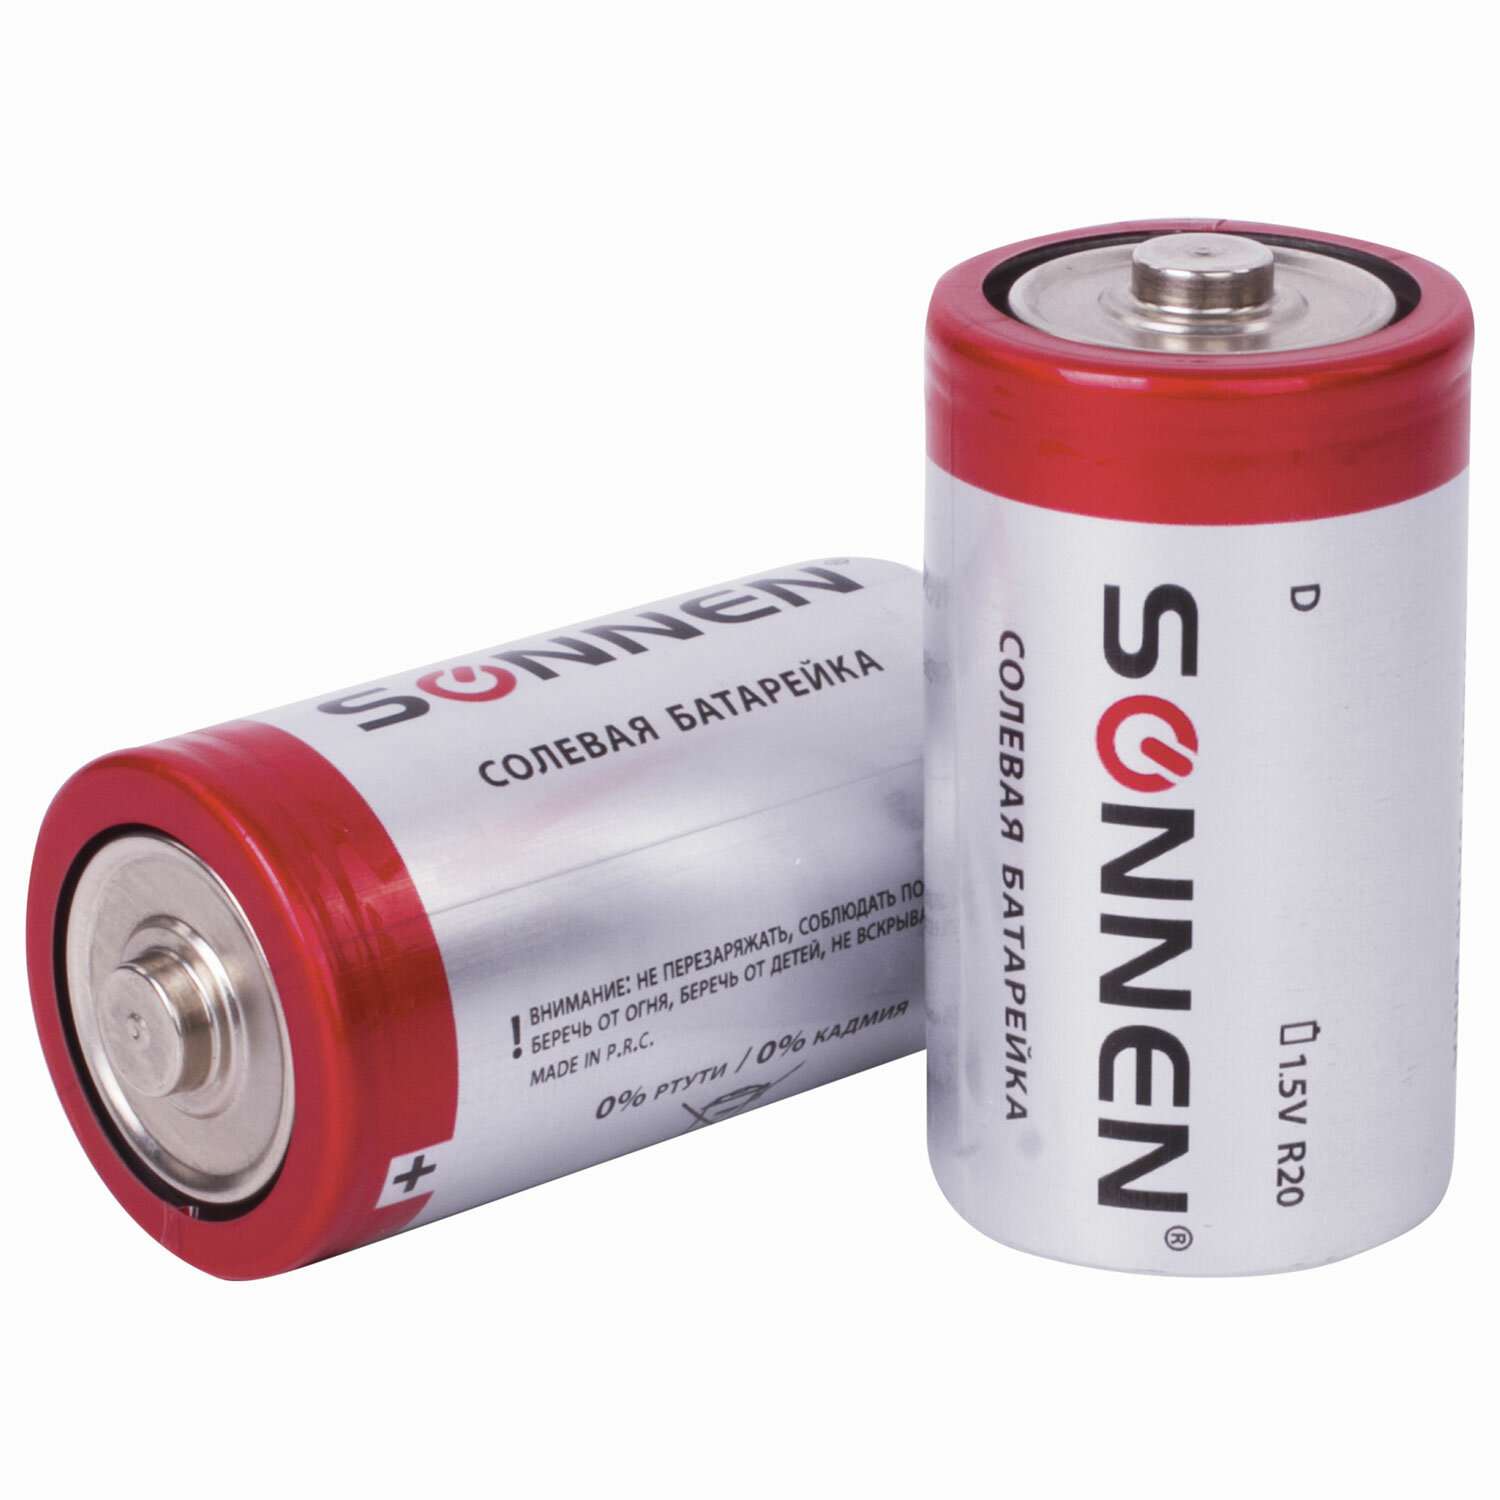 Батарейки Sonnen элементы питания солевые тип D 2 штуки для часов радио игрушек весов - фото 5